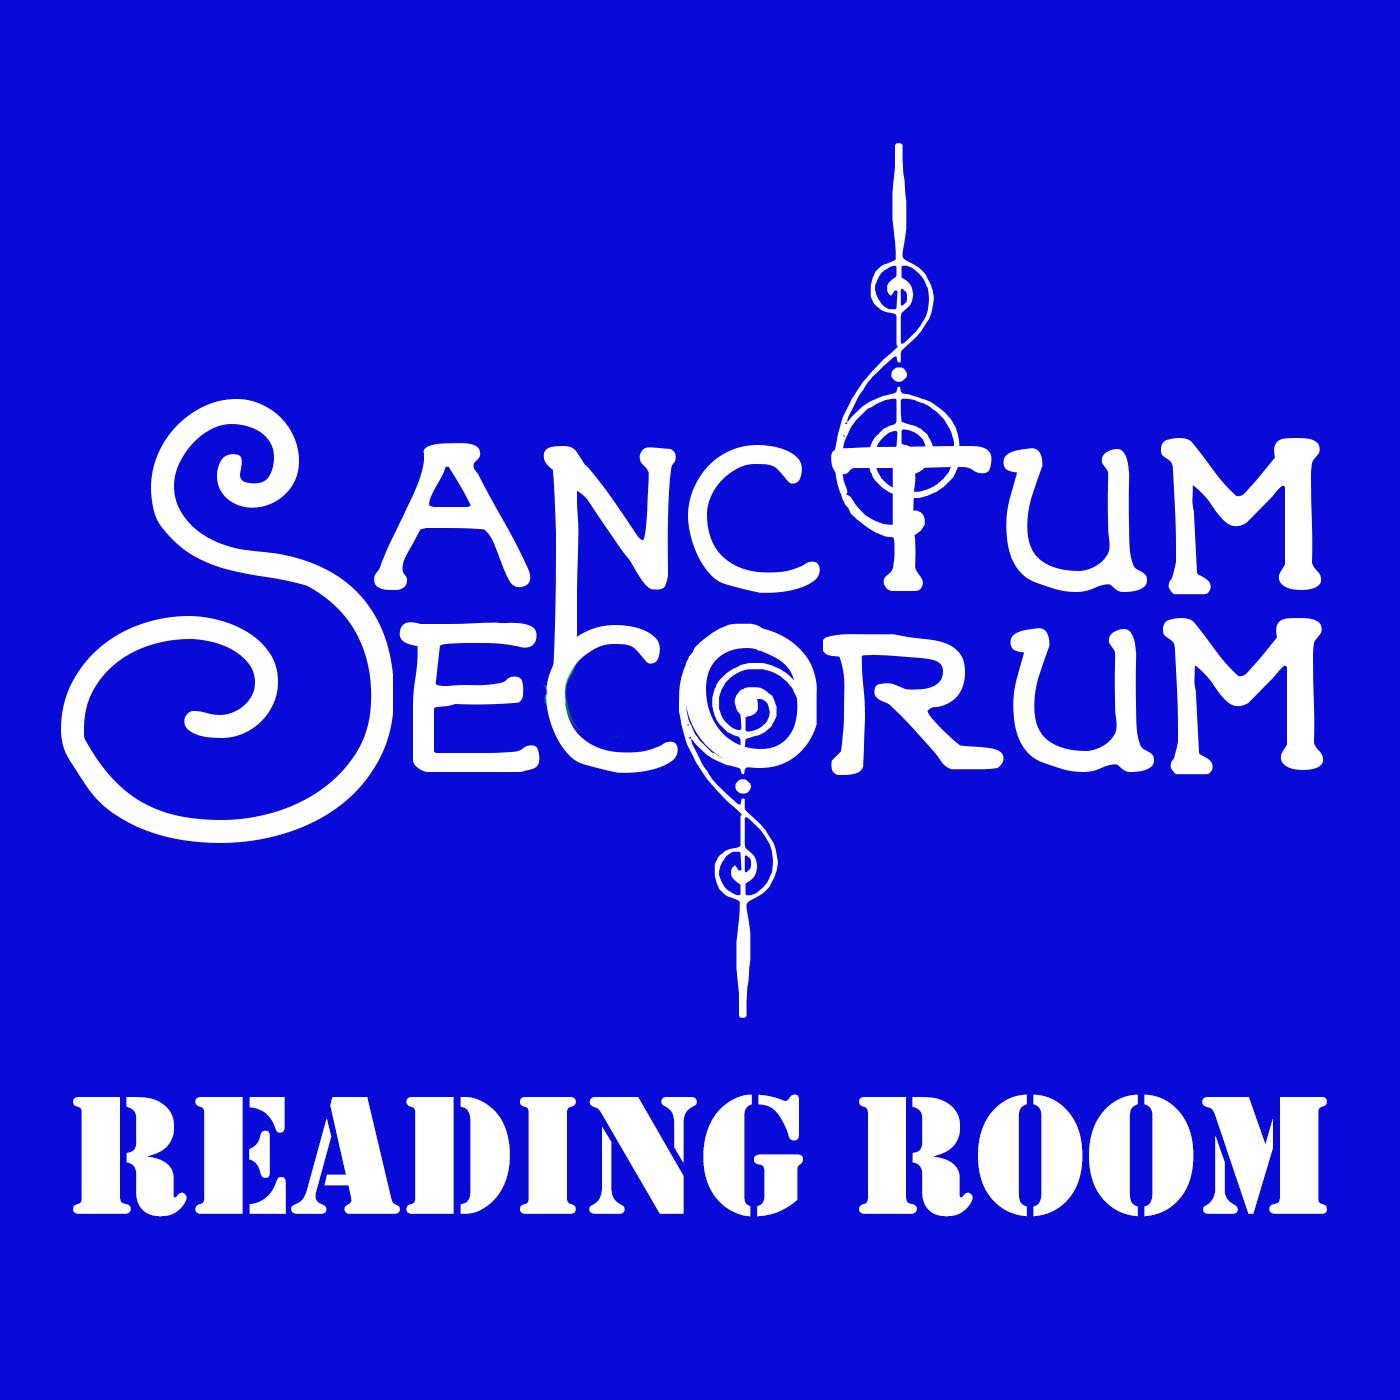 Sanctum Secorum Reading Room #02 - Quag Keep